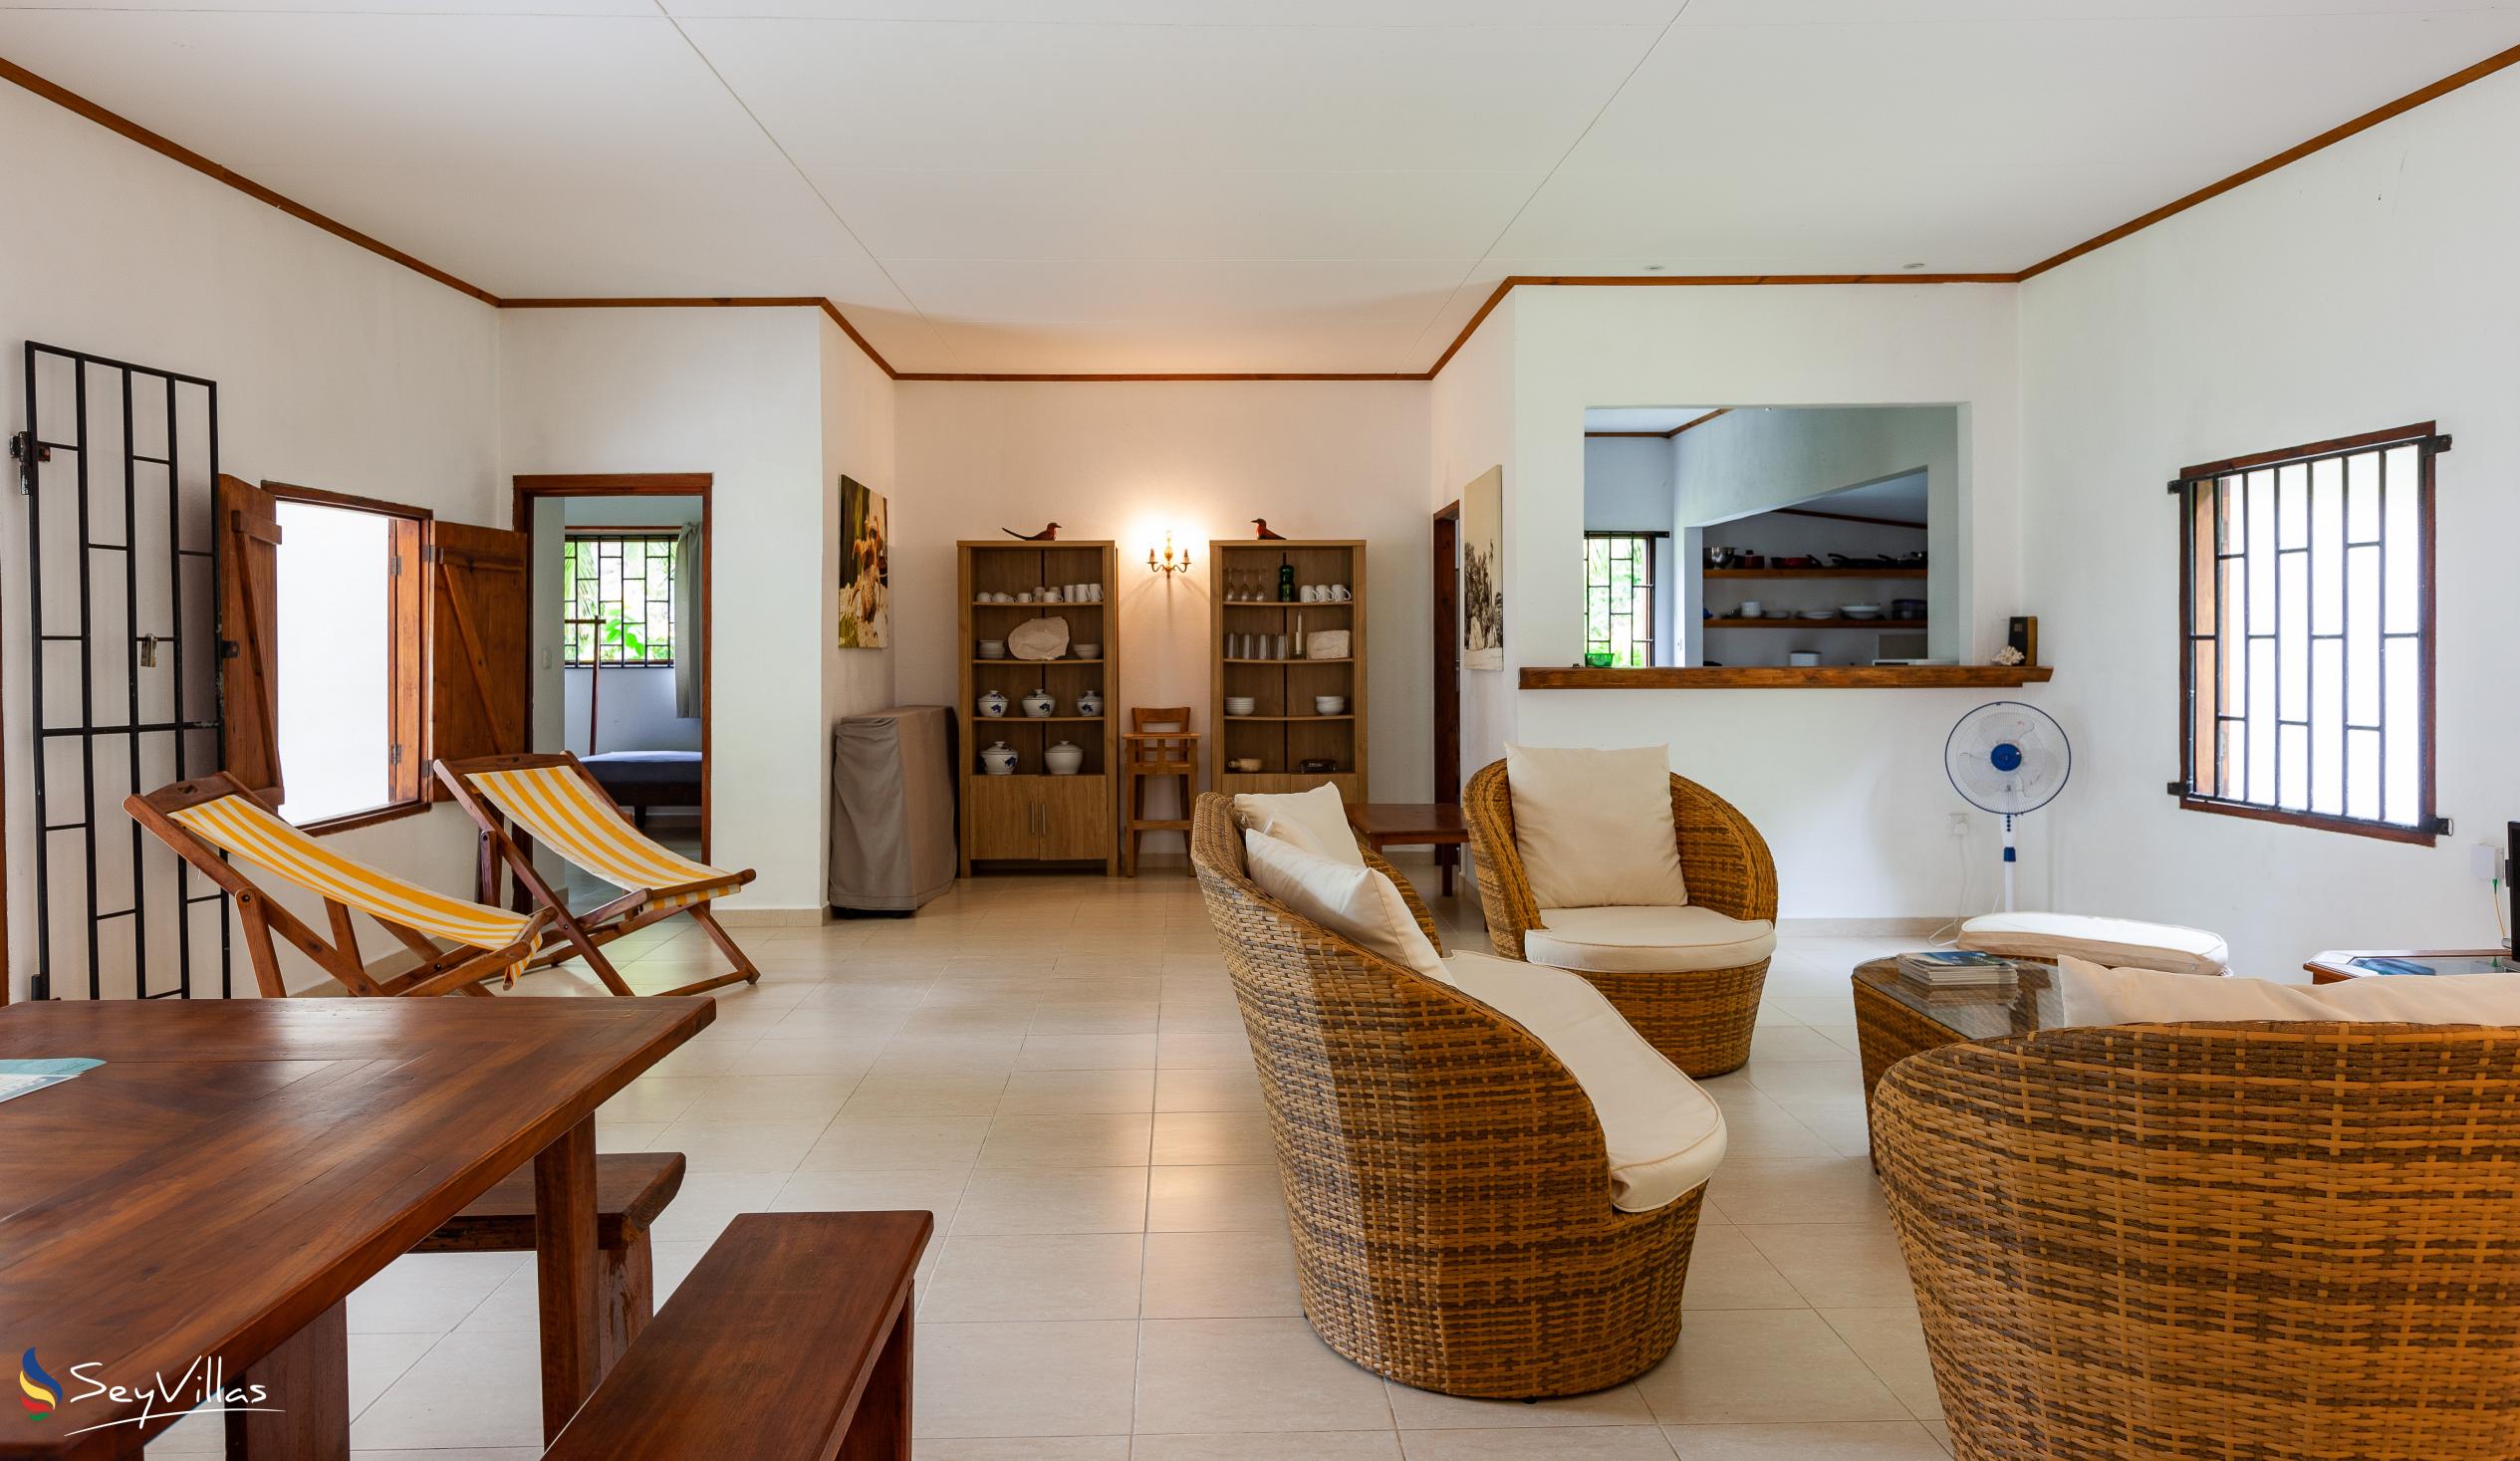 Foto 9: Villa Zananas - Innenbereich - Praslin (Seychellen)